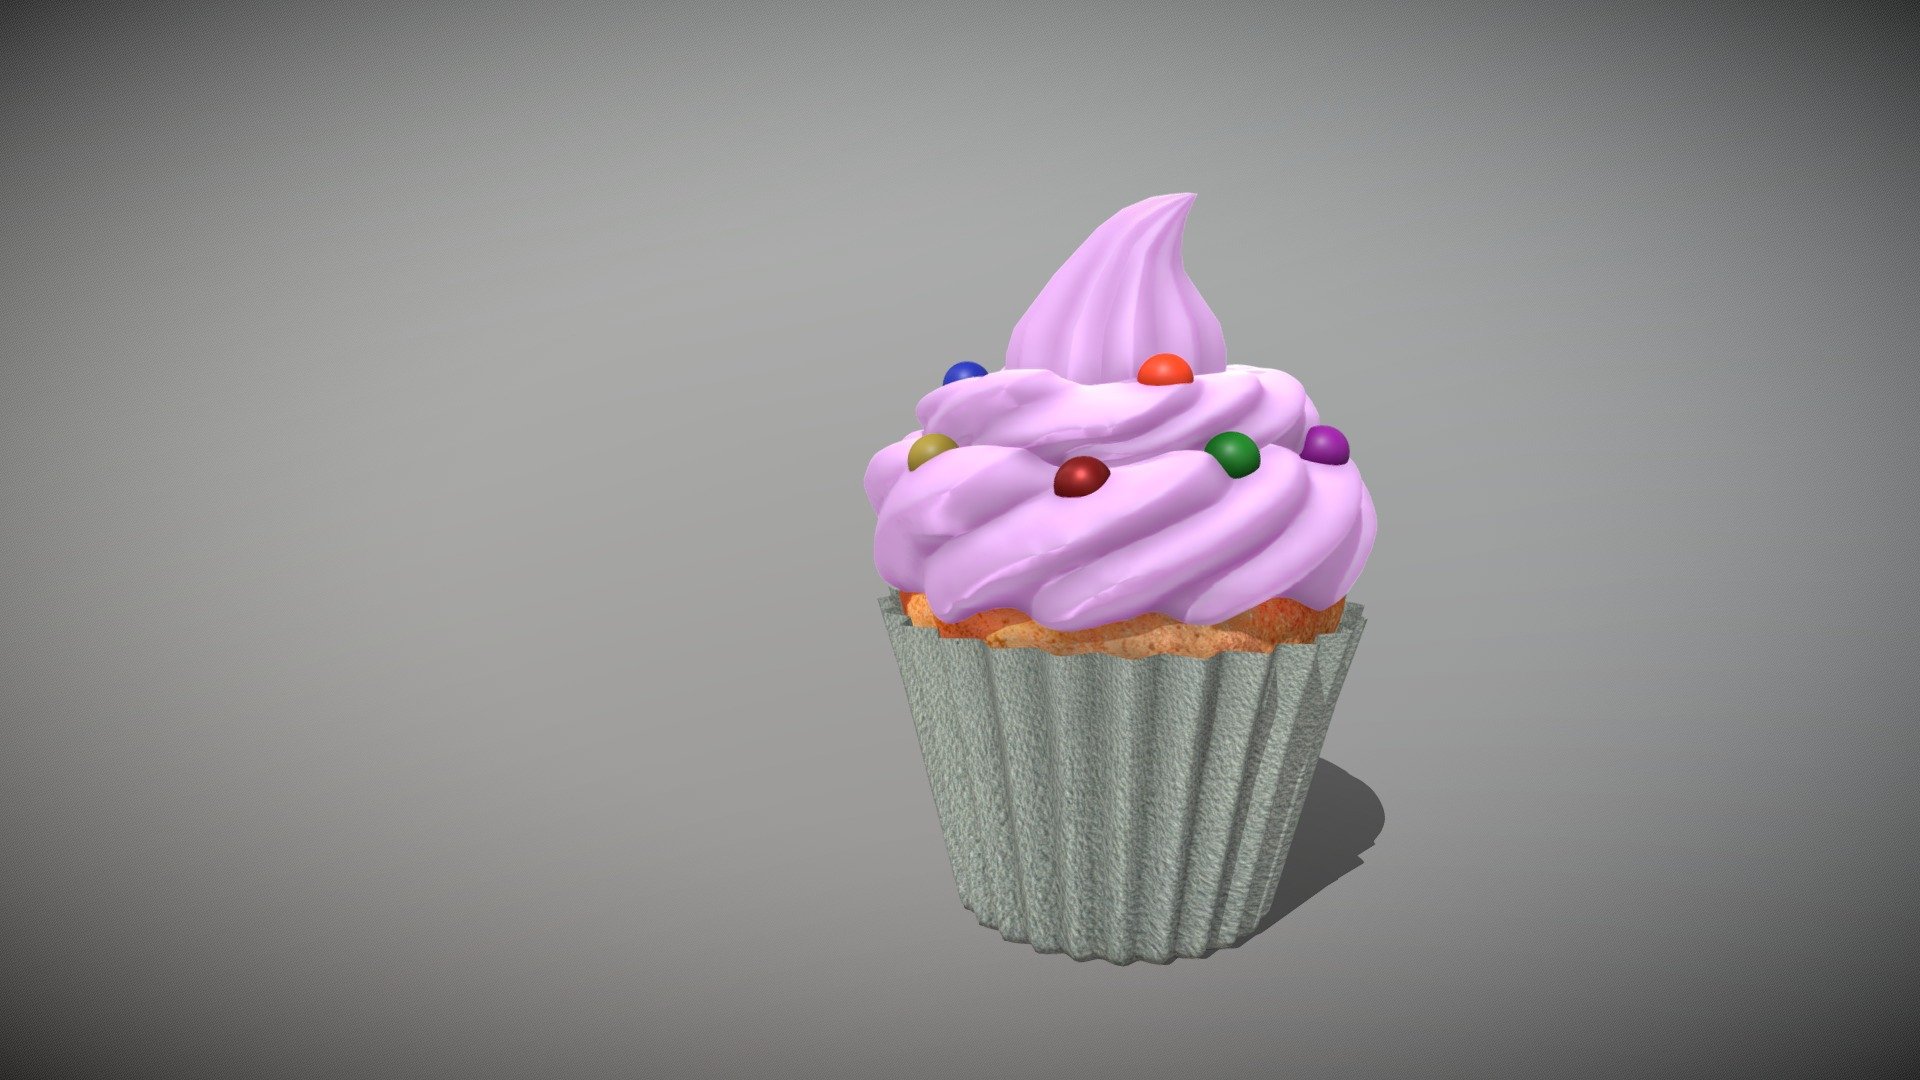 Cupcake mand in blender - Cupcake - 3D model by JoaoMP 3d model